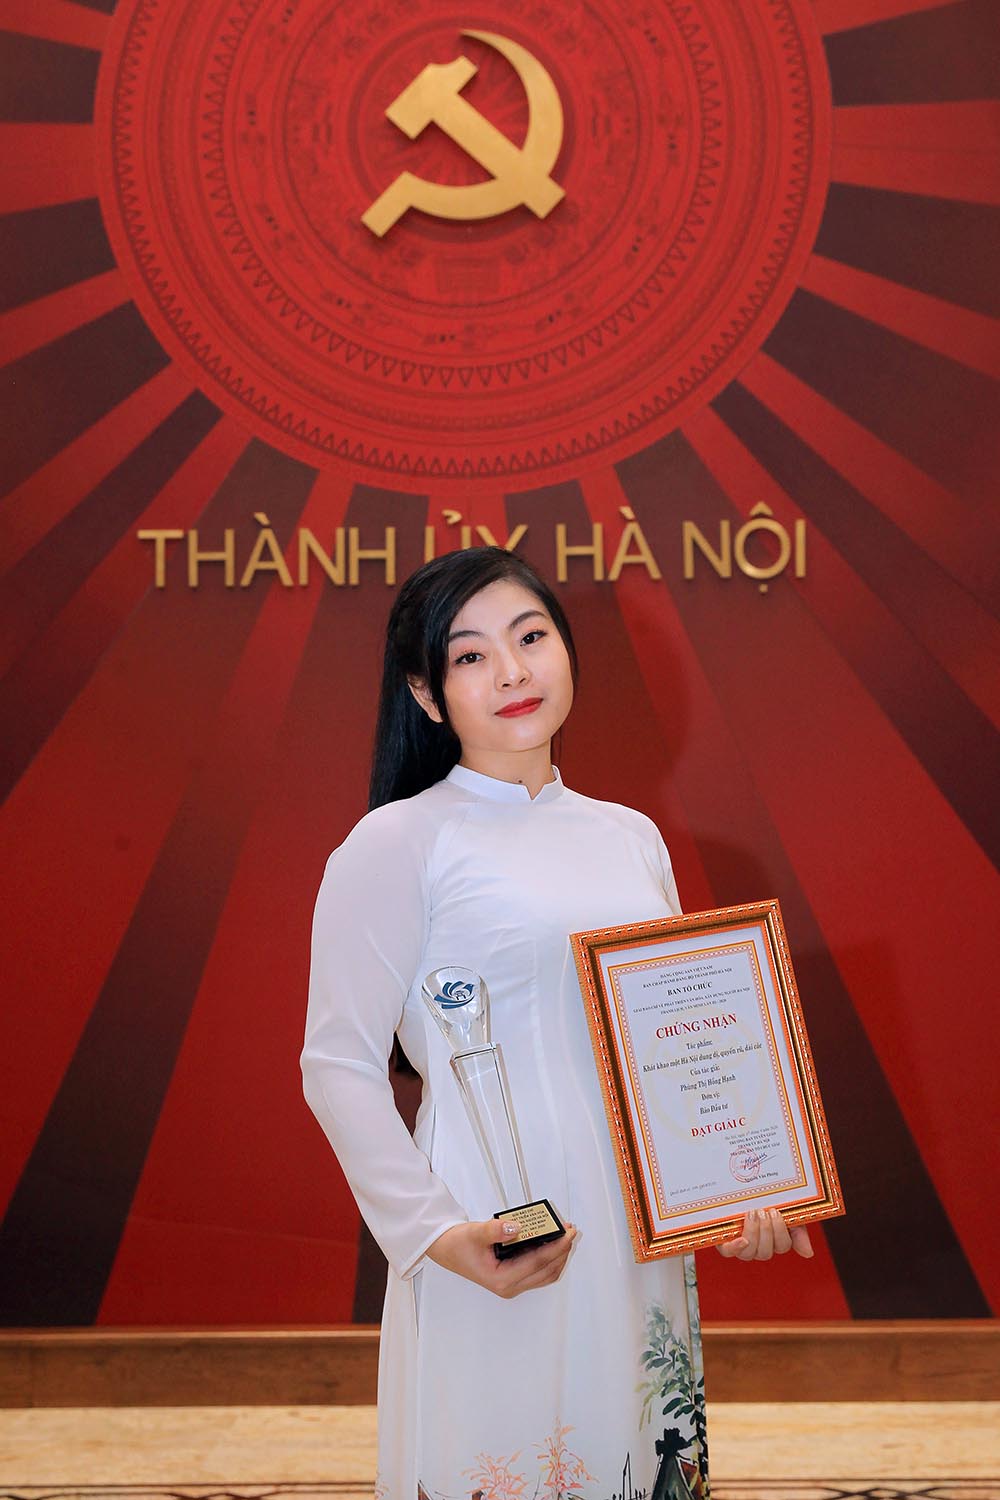 Nhà báo Phùng Thị Hồng Hạnh là đồng tác giả của 1 tác phẩm đoạt Giải B và là tác giả có tác phẩm đoạt 1 Giải C tại hai giải báo chí của Hà Nội năm 2020